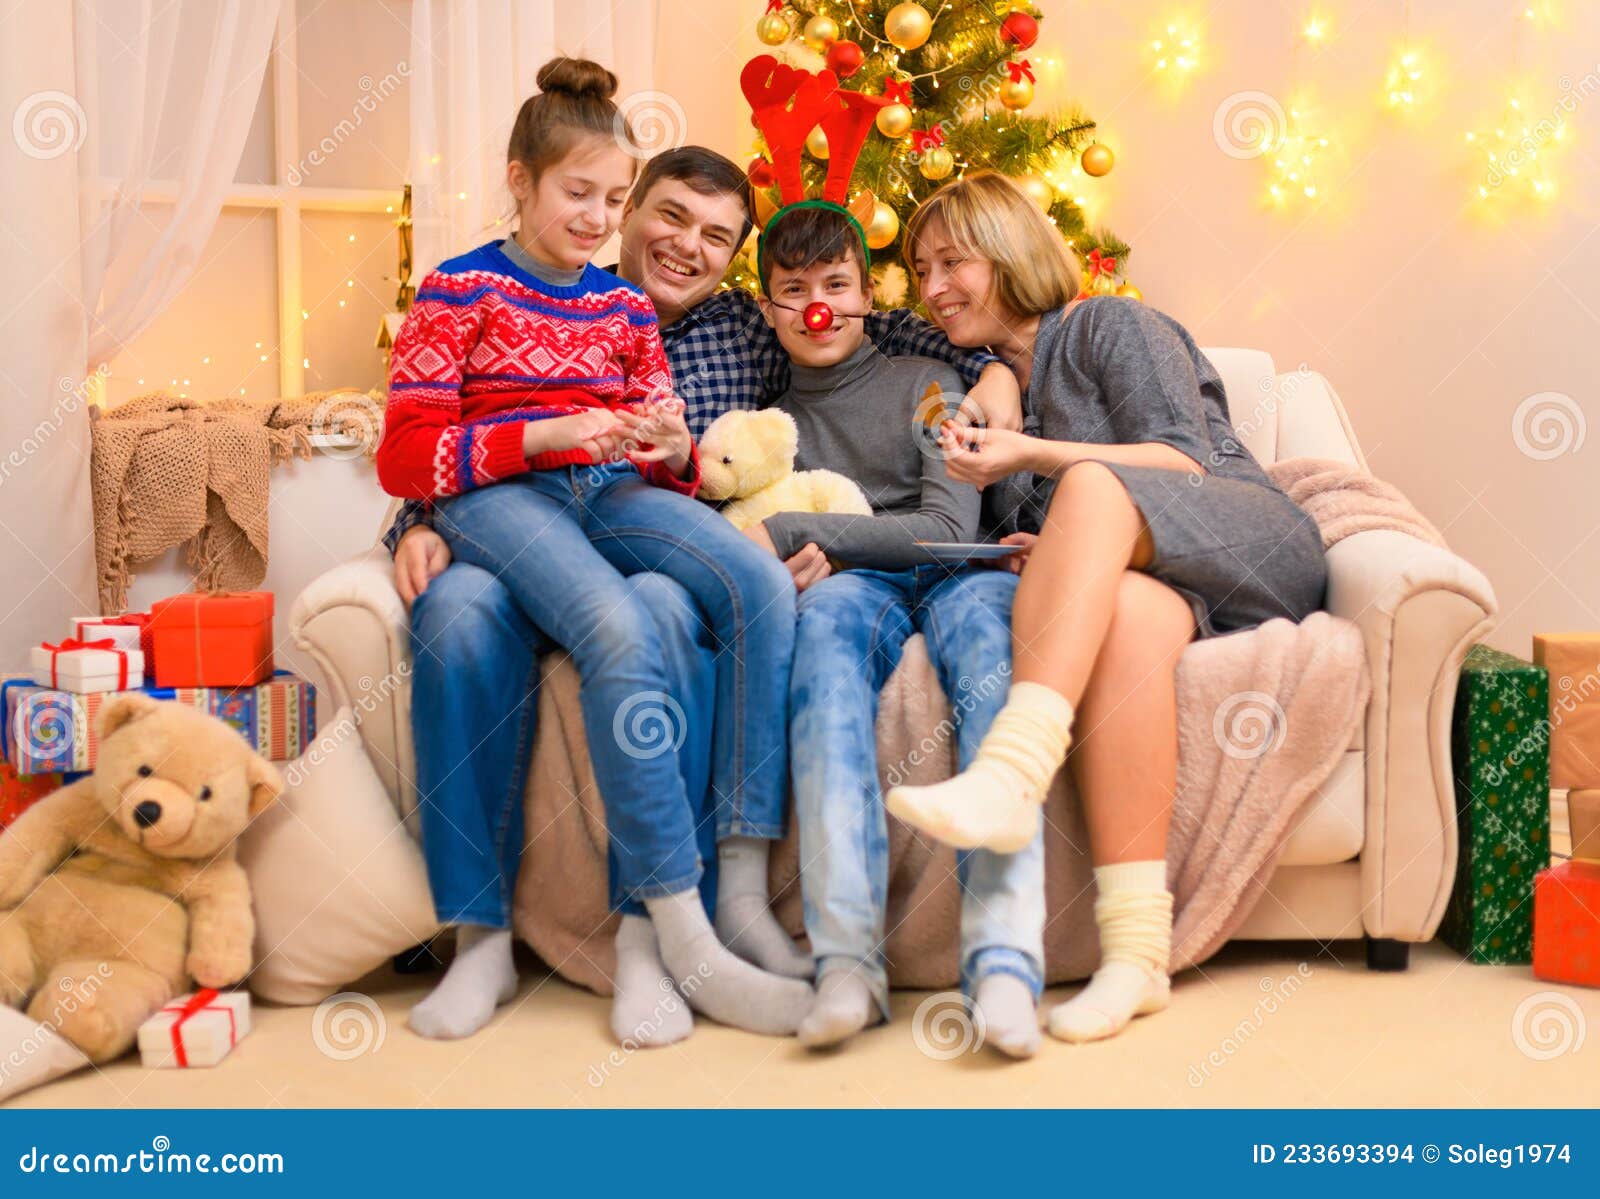 Família Conceito De Férias De Inverno Sentado Num Sofá Com Decoração De  Natal Ou De Ano Novo. Crianças E Pais. Feriado Foto de Stock - Imagem de  conversa, chifre: 233693394